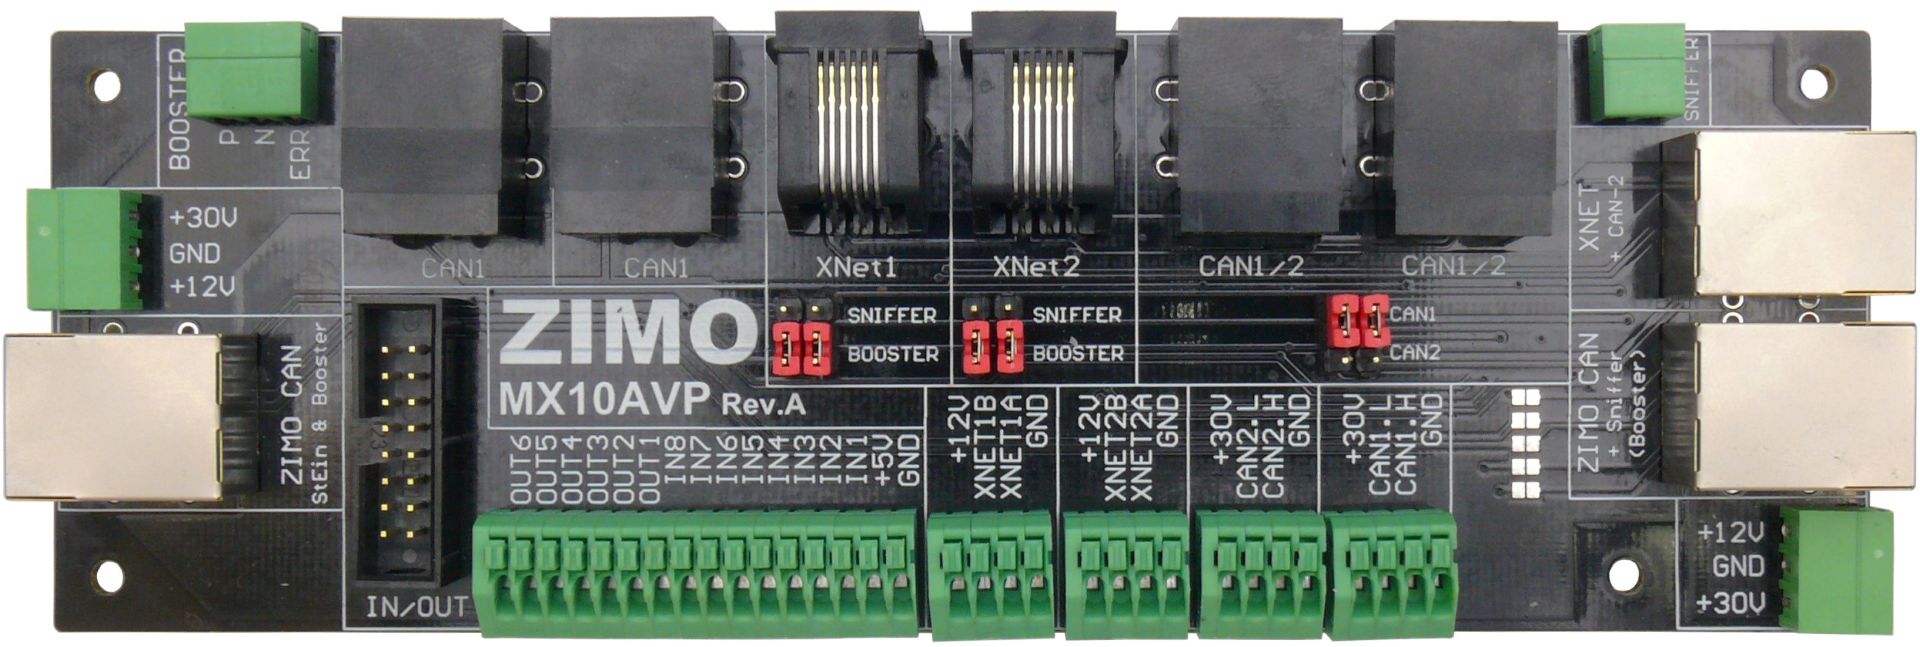 Zimo MX10AVP - MX10 Anschluß- und Verteilplatine - 18 x 6 cm; inkl. Stecker und Kabel